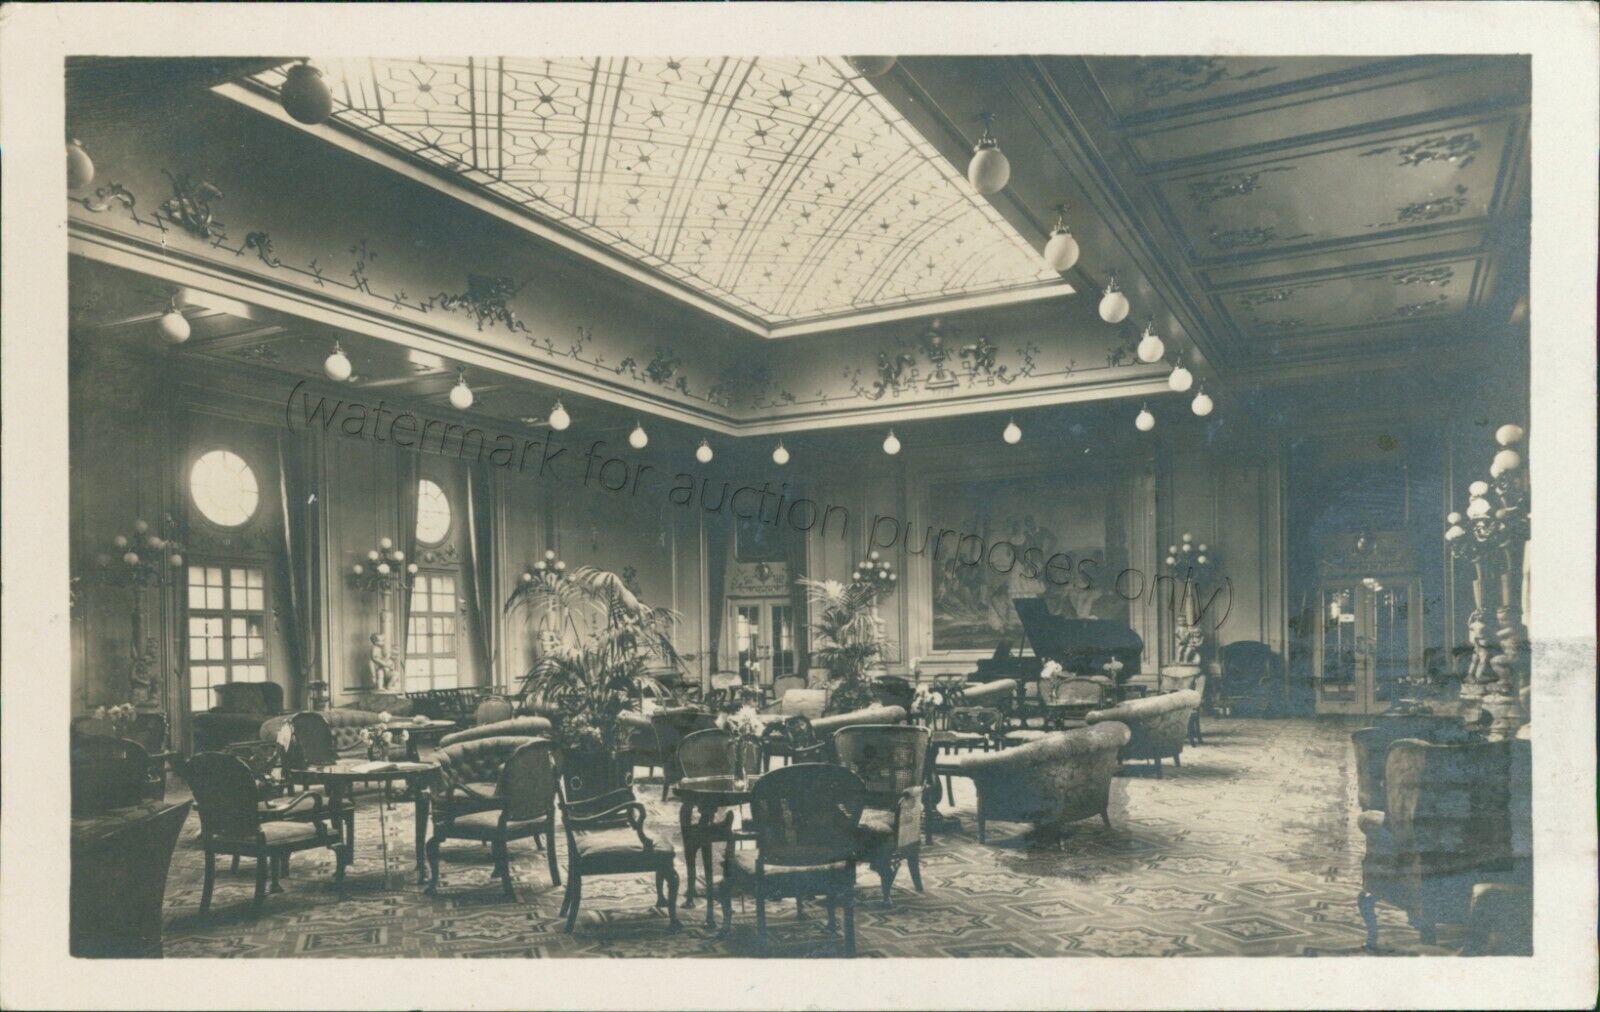 Norddeutscher Lloyd Bremen Interior Lounge 1926 - Vintage D. Columbus Postcard